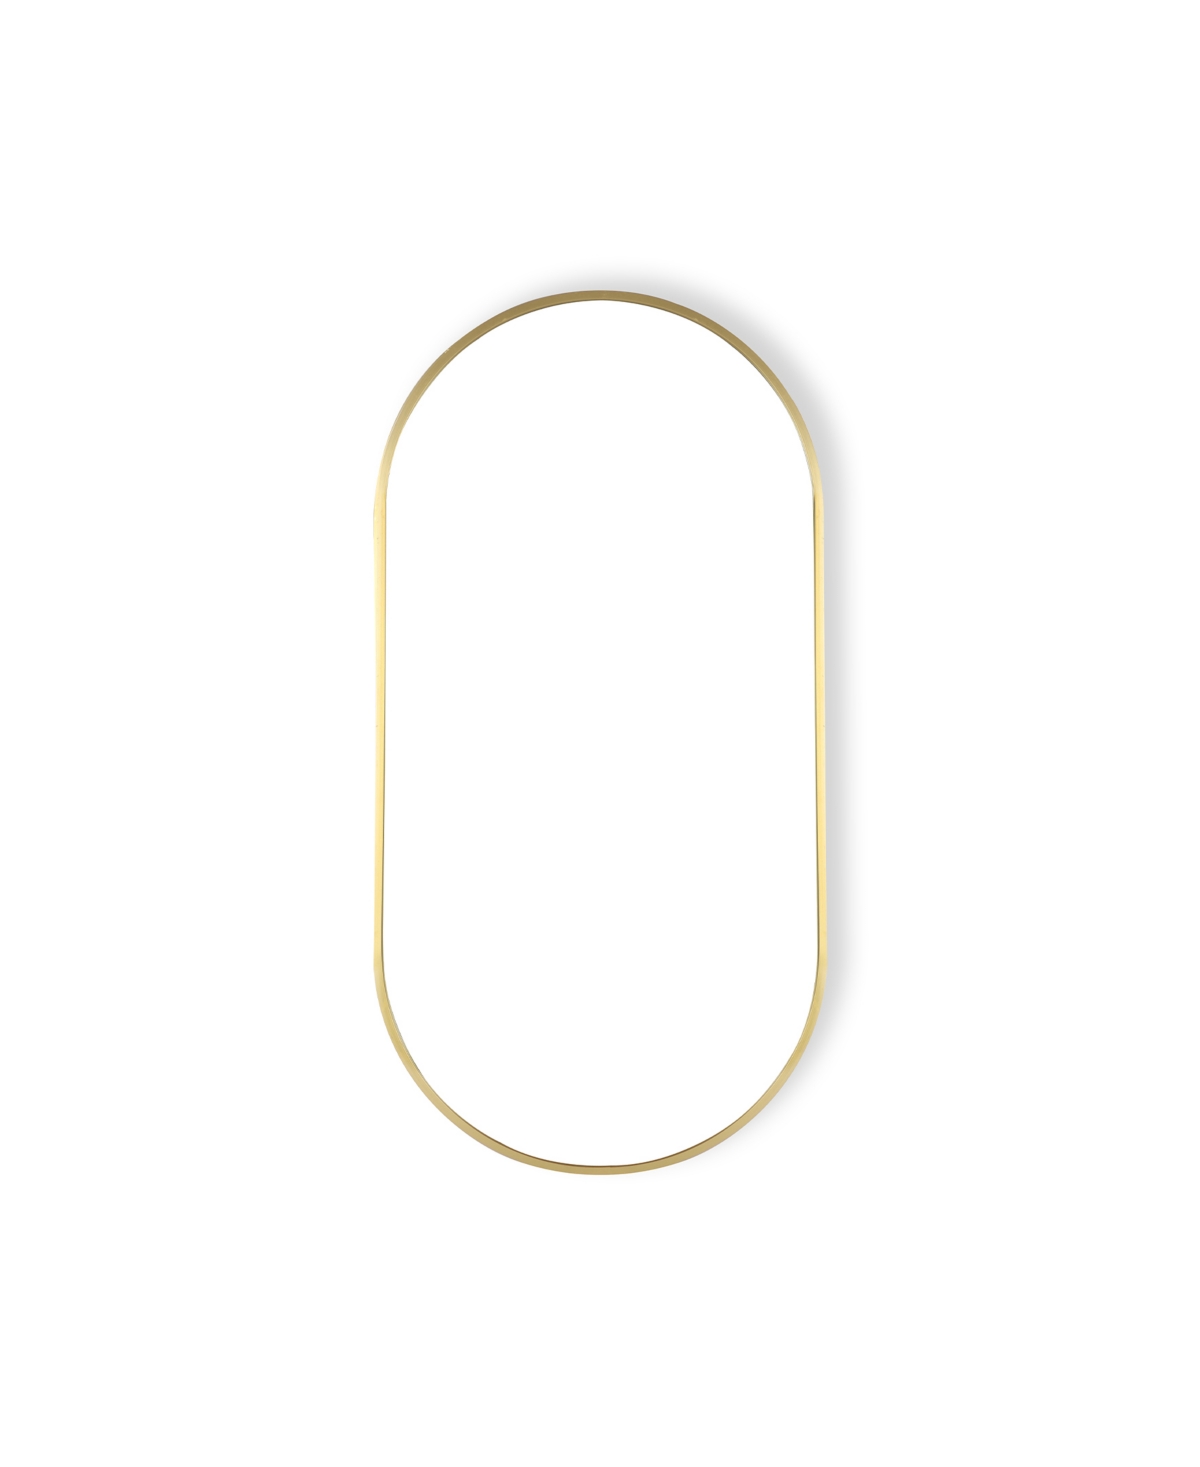 Oval Framed Bathroom Decorative Wall Mirror, 31.5" x 15.7" - Gold